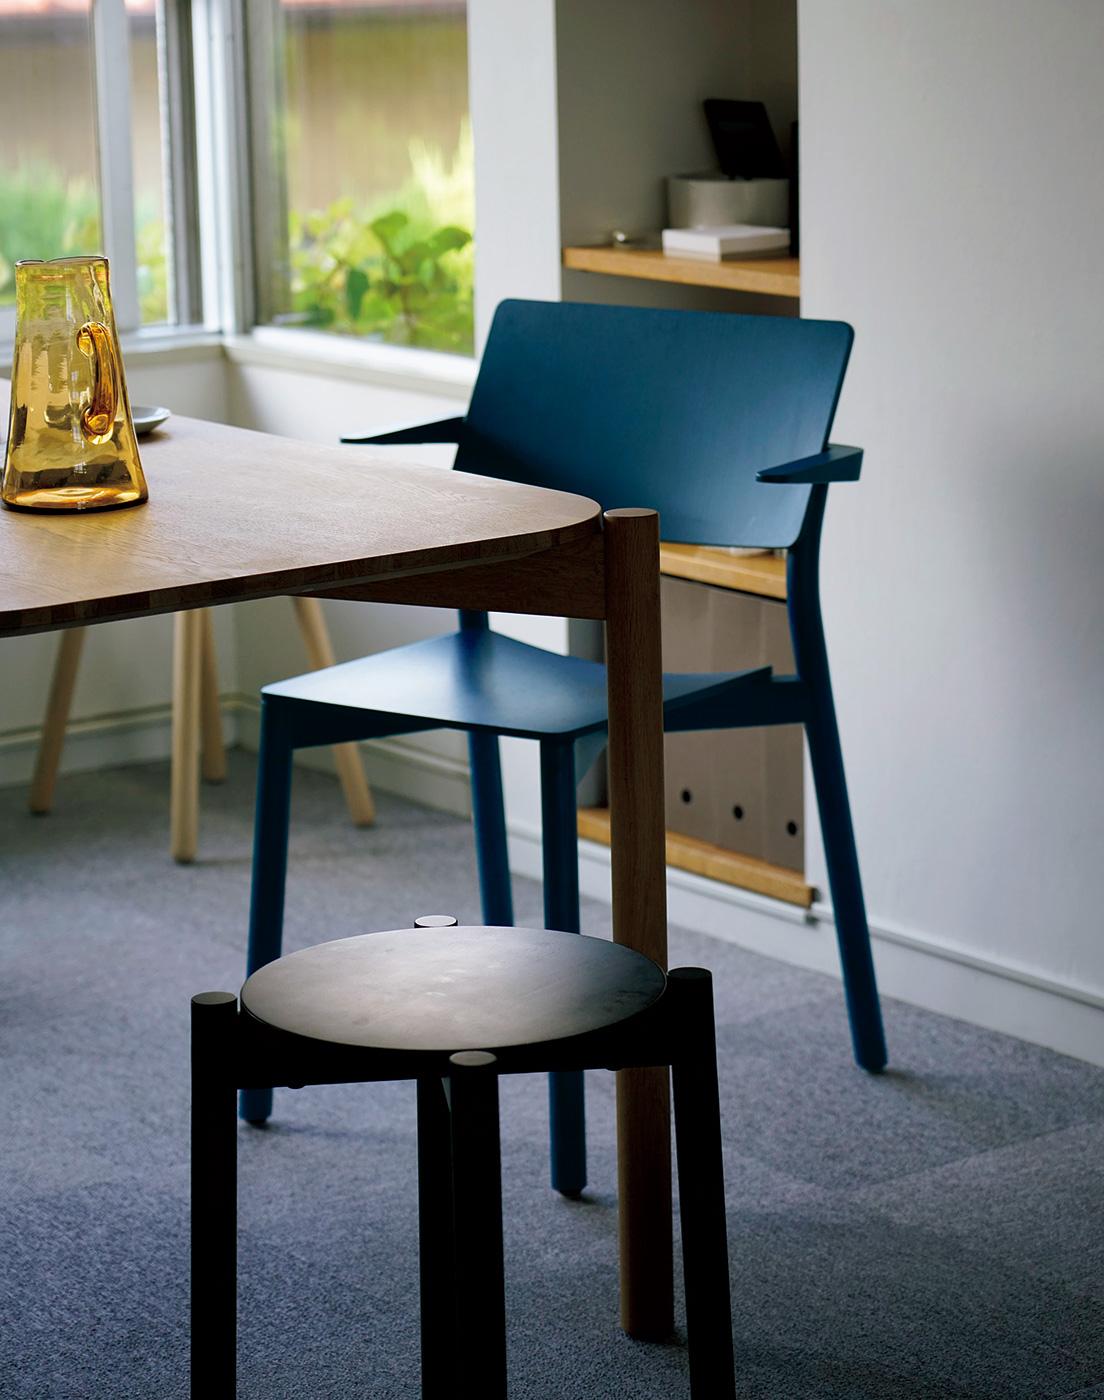 ダヴィッド・グレットリのスタジオにある〈KNS〉製品。テーブルとスツールは《キャストール》、椅子はゲッケラー・ミヘルスの《パノラマアームチェア》。